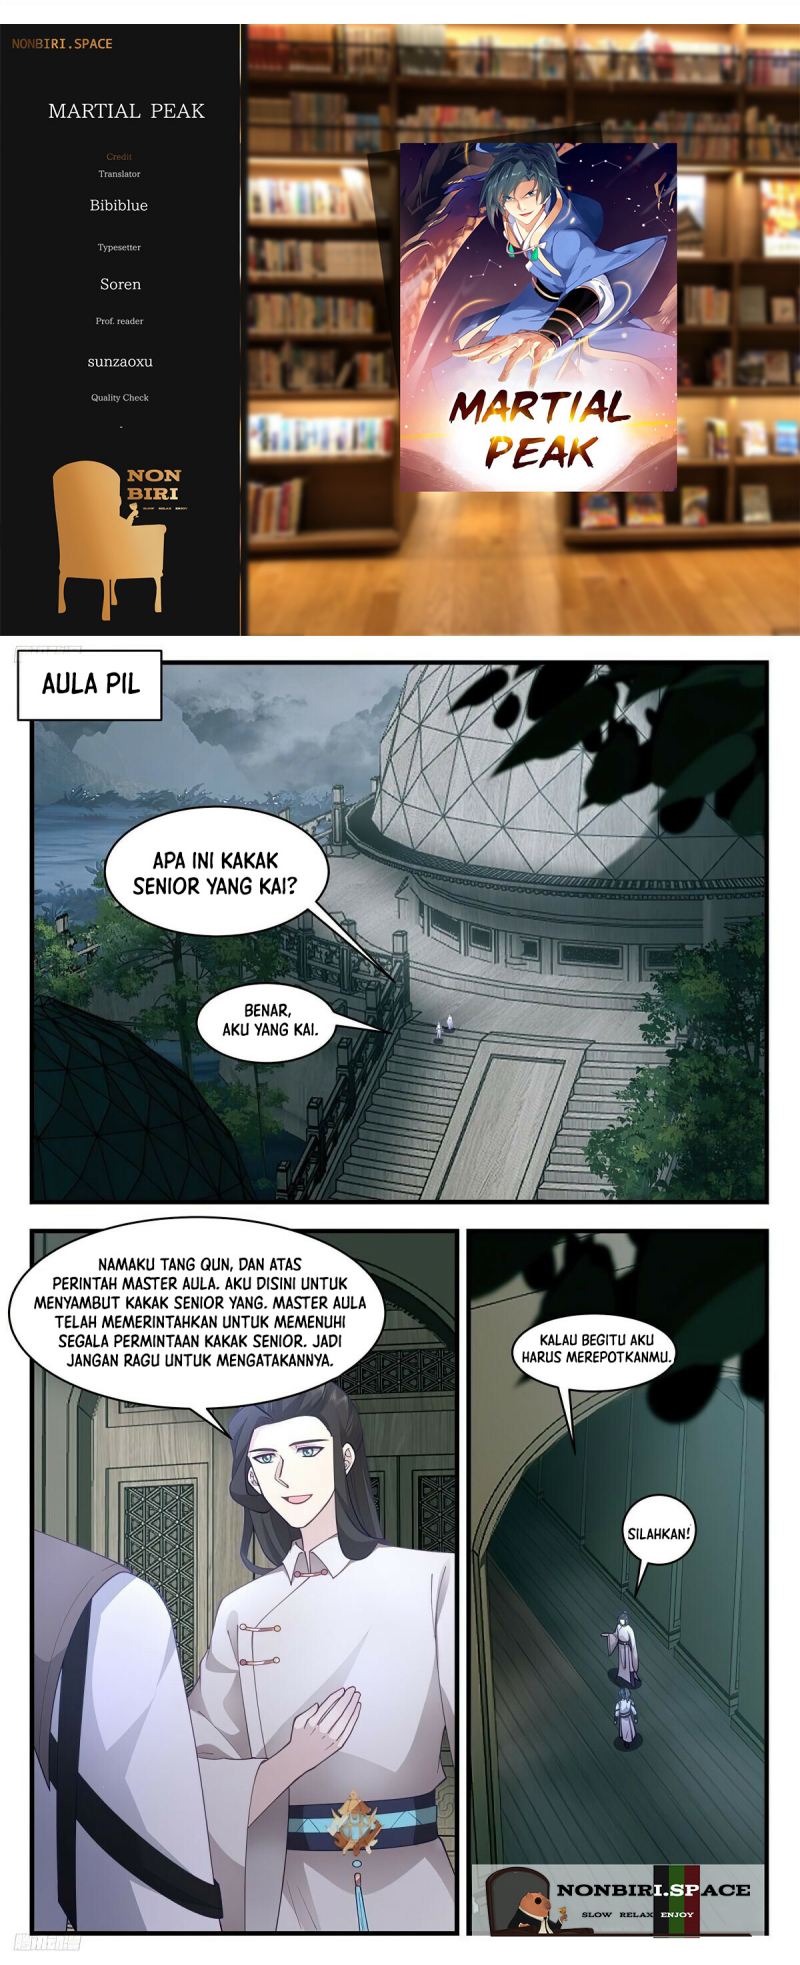 Baca Komik Martial Peak Part 2 Chapter 3098 Gambar 1